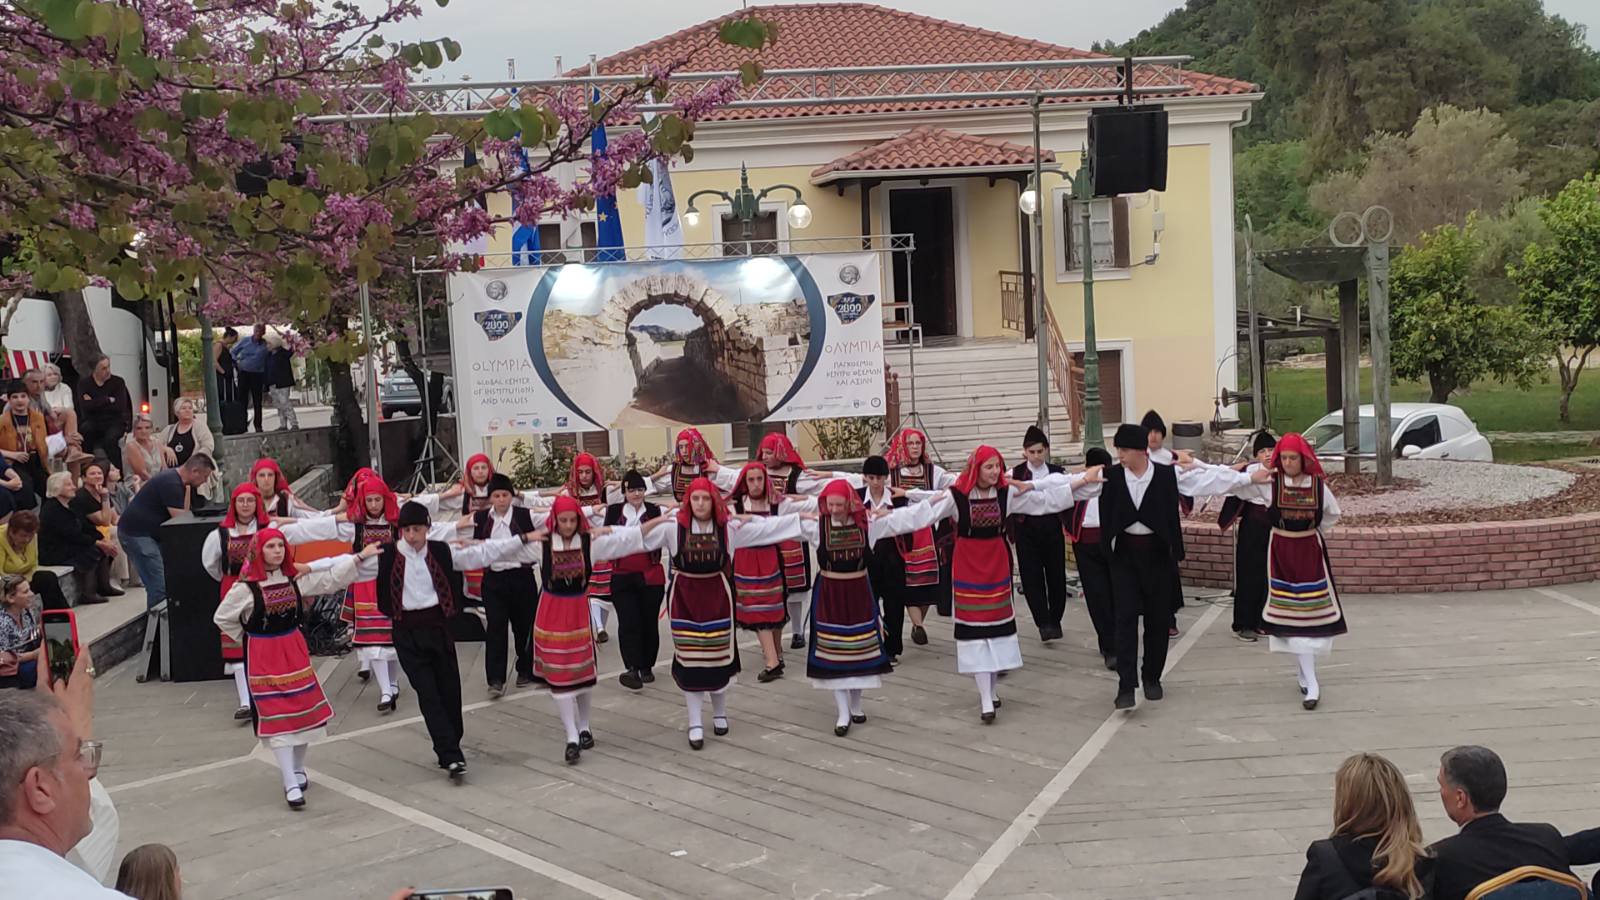 Δελτίο τύπου - Συγκίνησαν οι Έλληνες και οι Ιάπωνες με τους παραδοσιακούς χορούς και τις μουσικές τους!